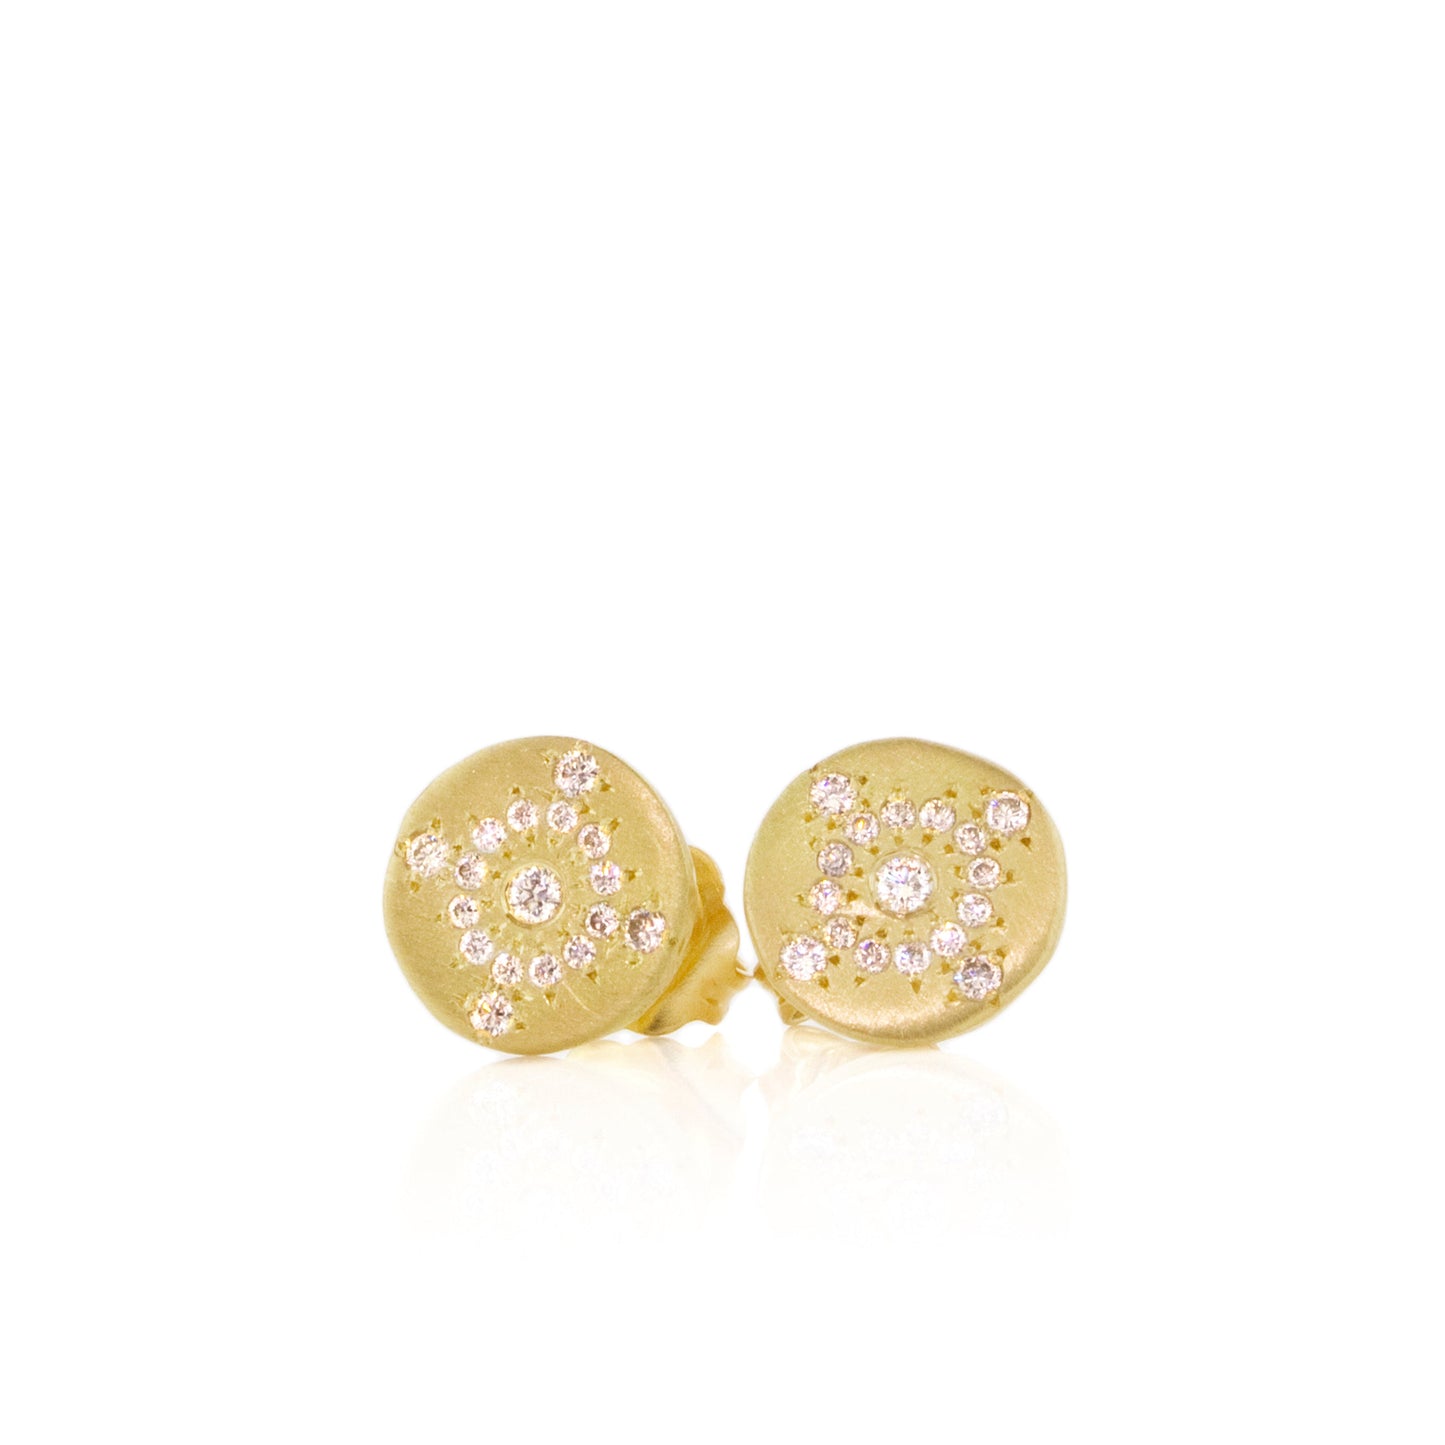 Adel Chefridi Petite Shimmer Diamond Stud Earrings